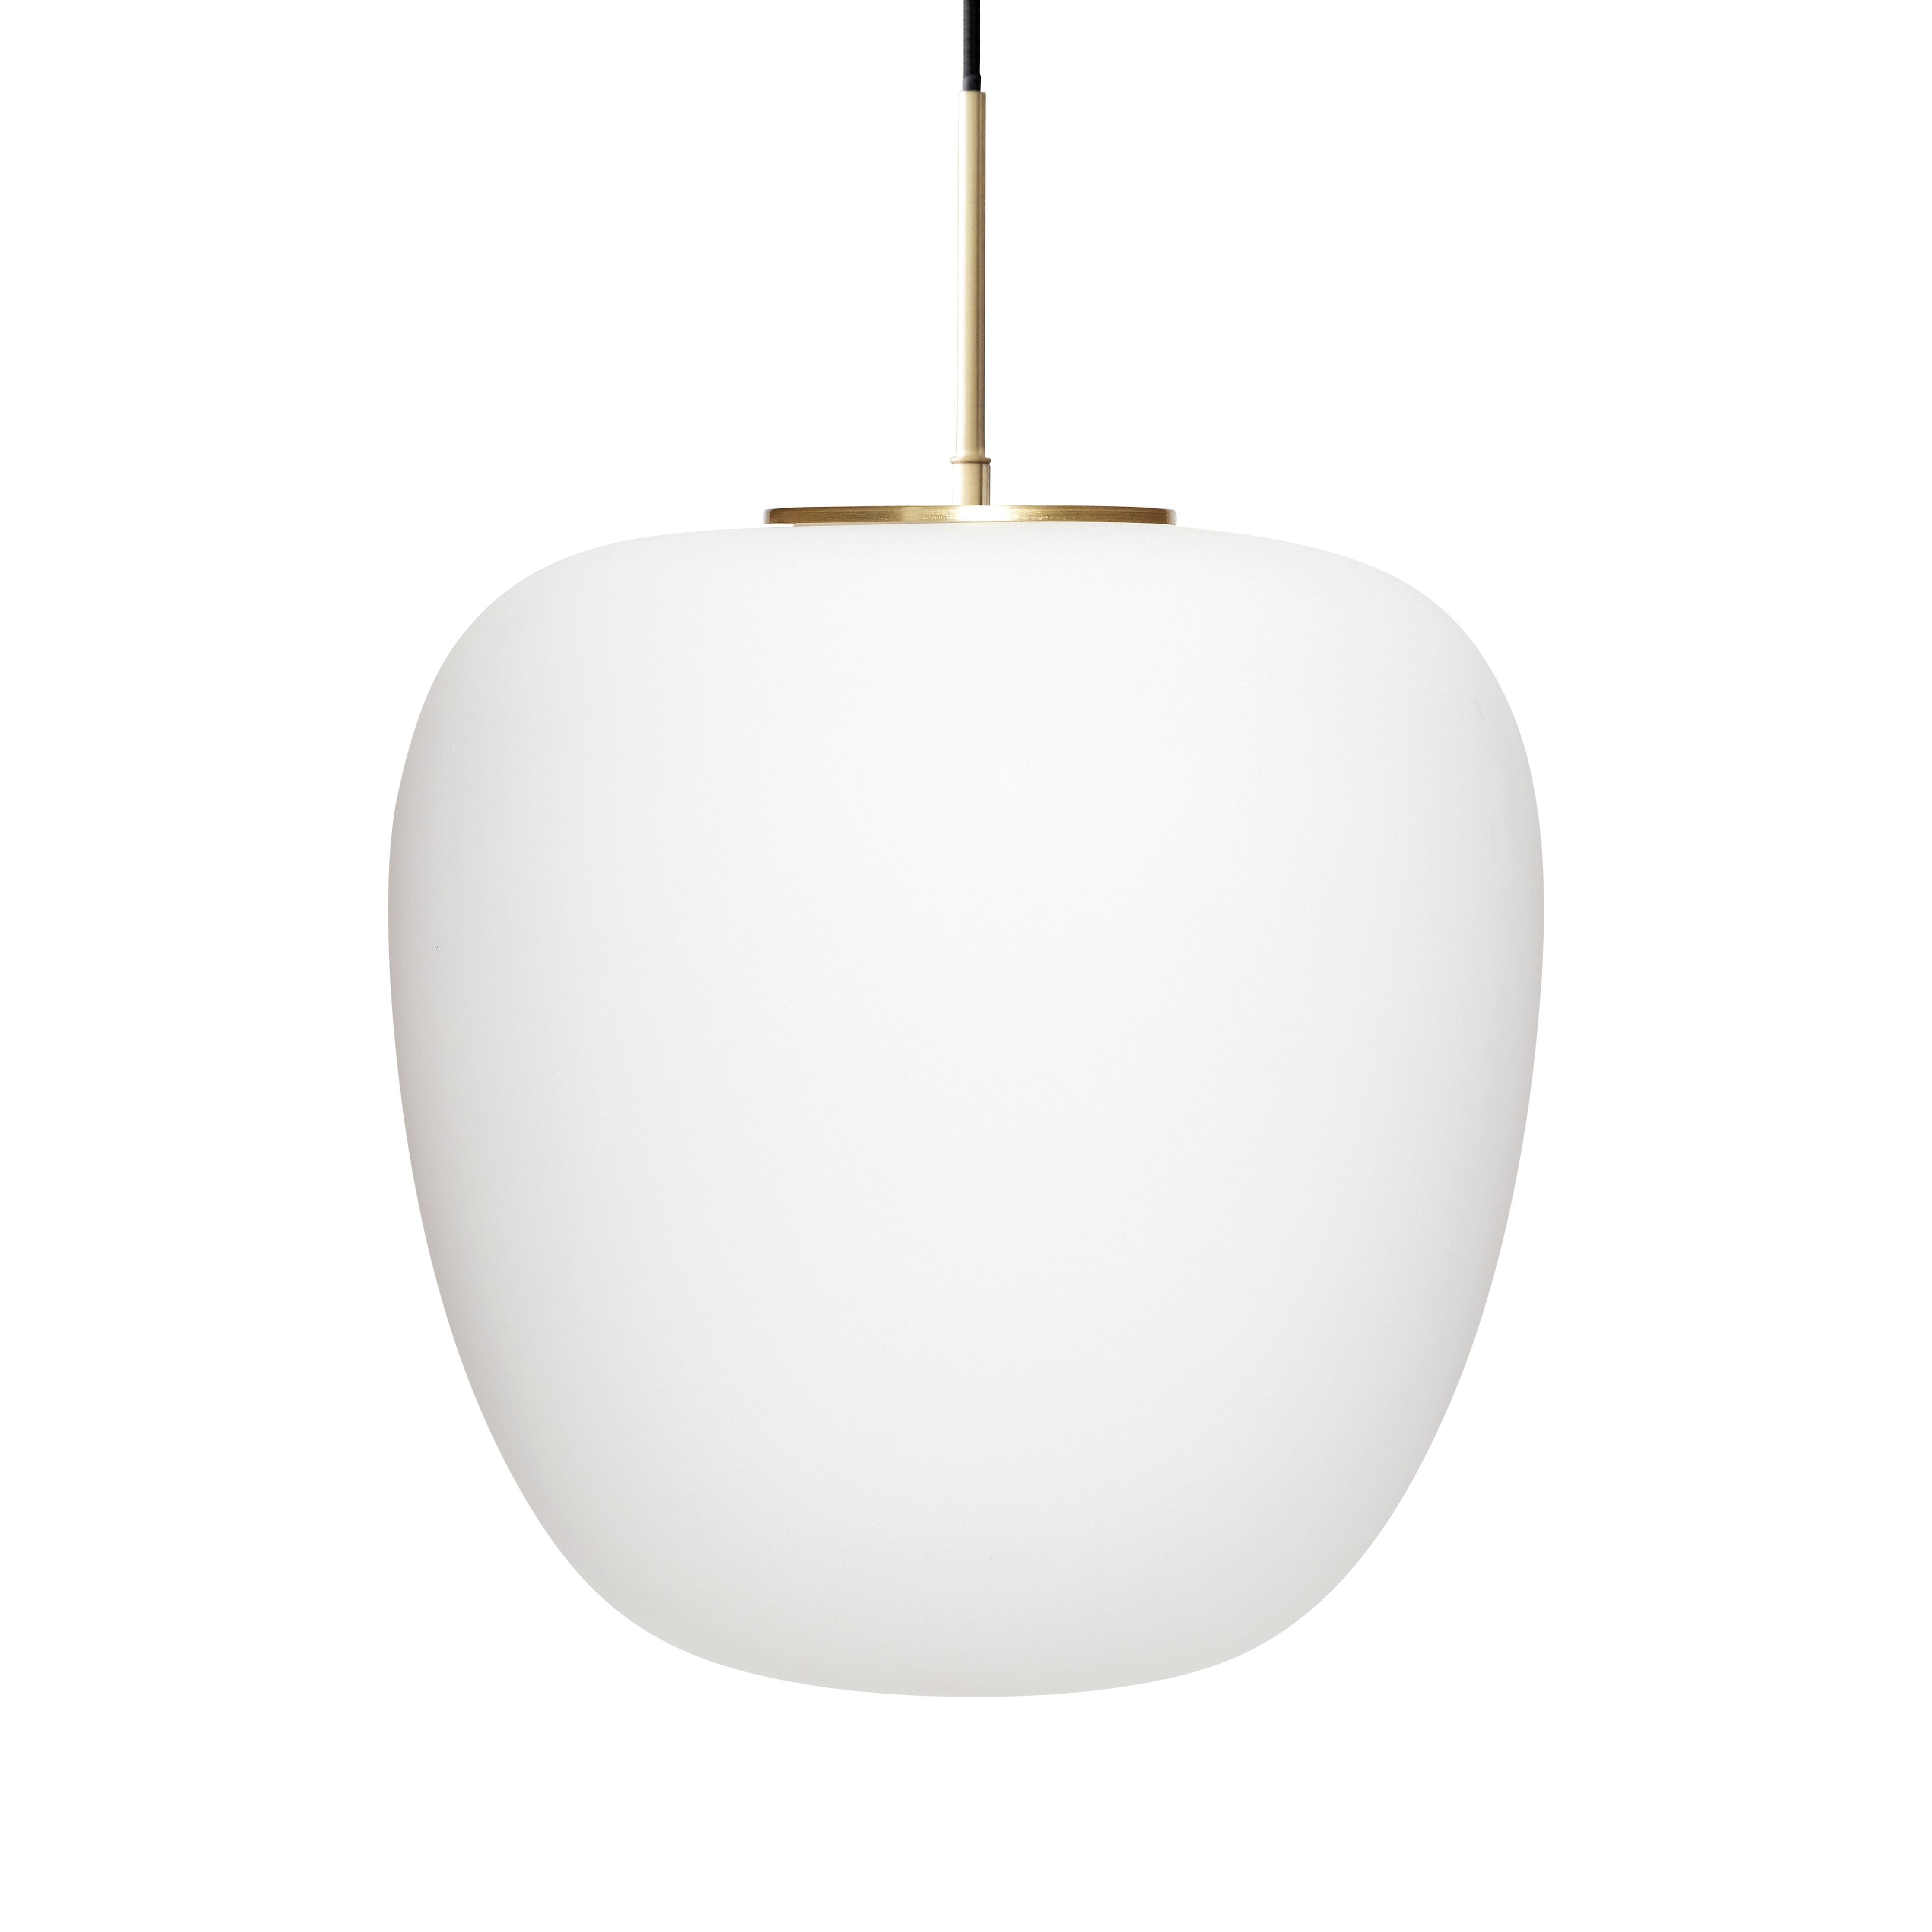 Hübsch Muse Lamp Glass White/Brass, 40x40 cm